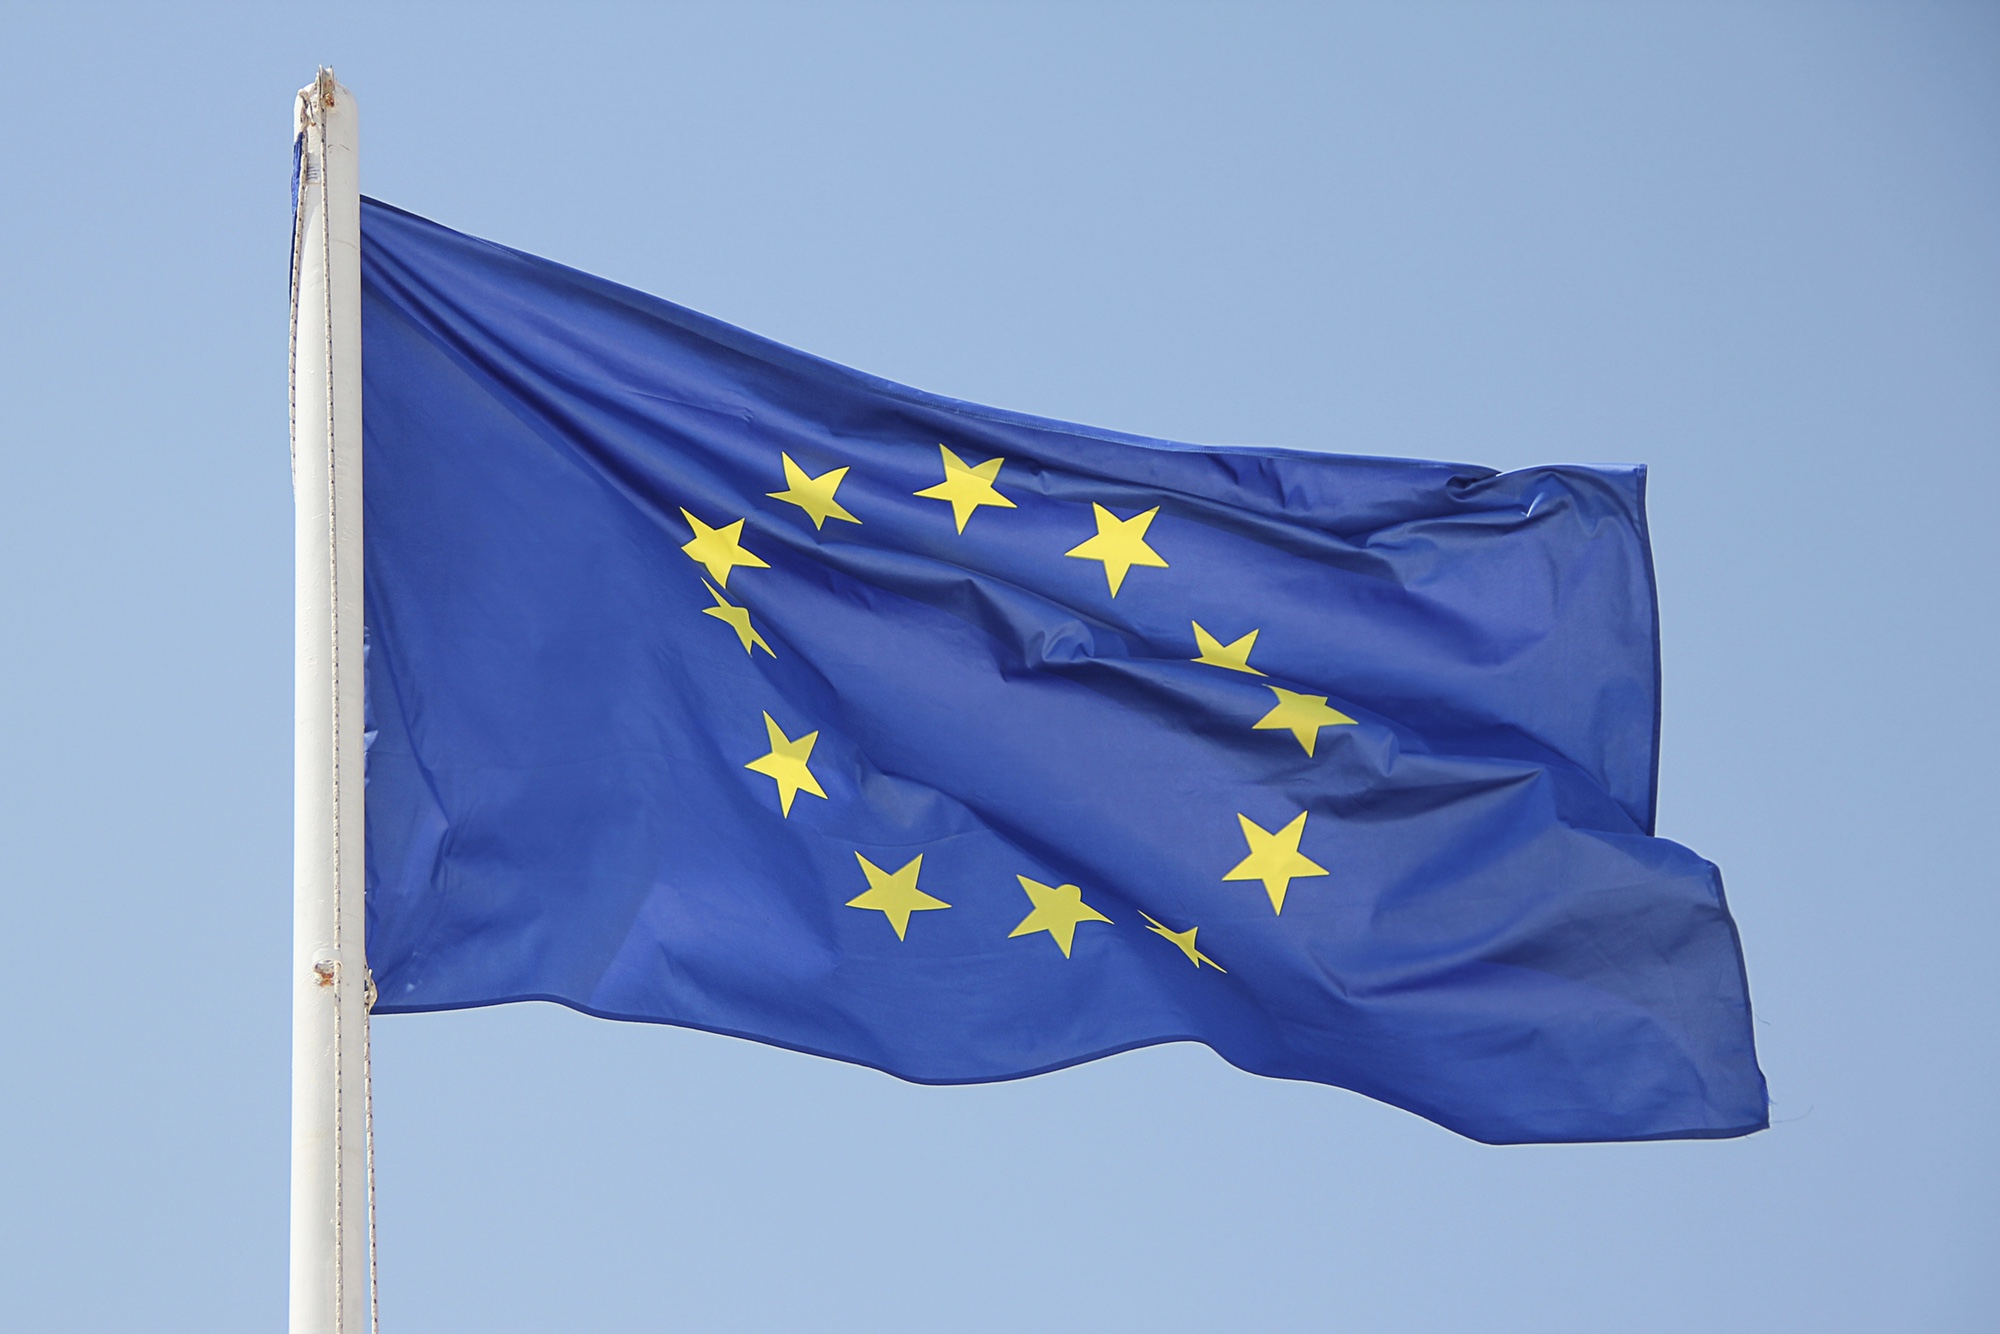 Foto: Flagge der Europäischen Union (EU)